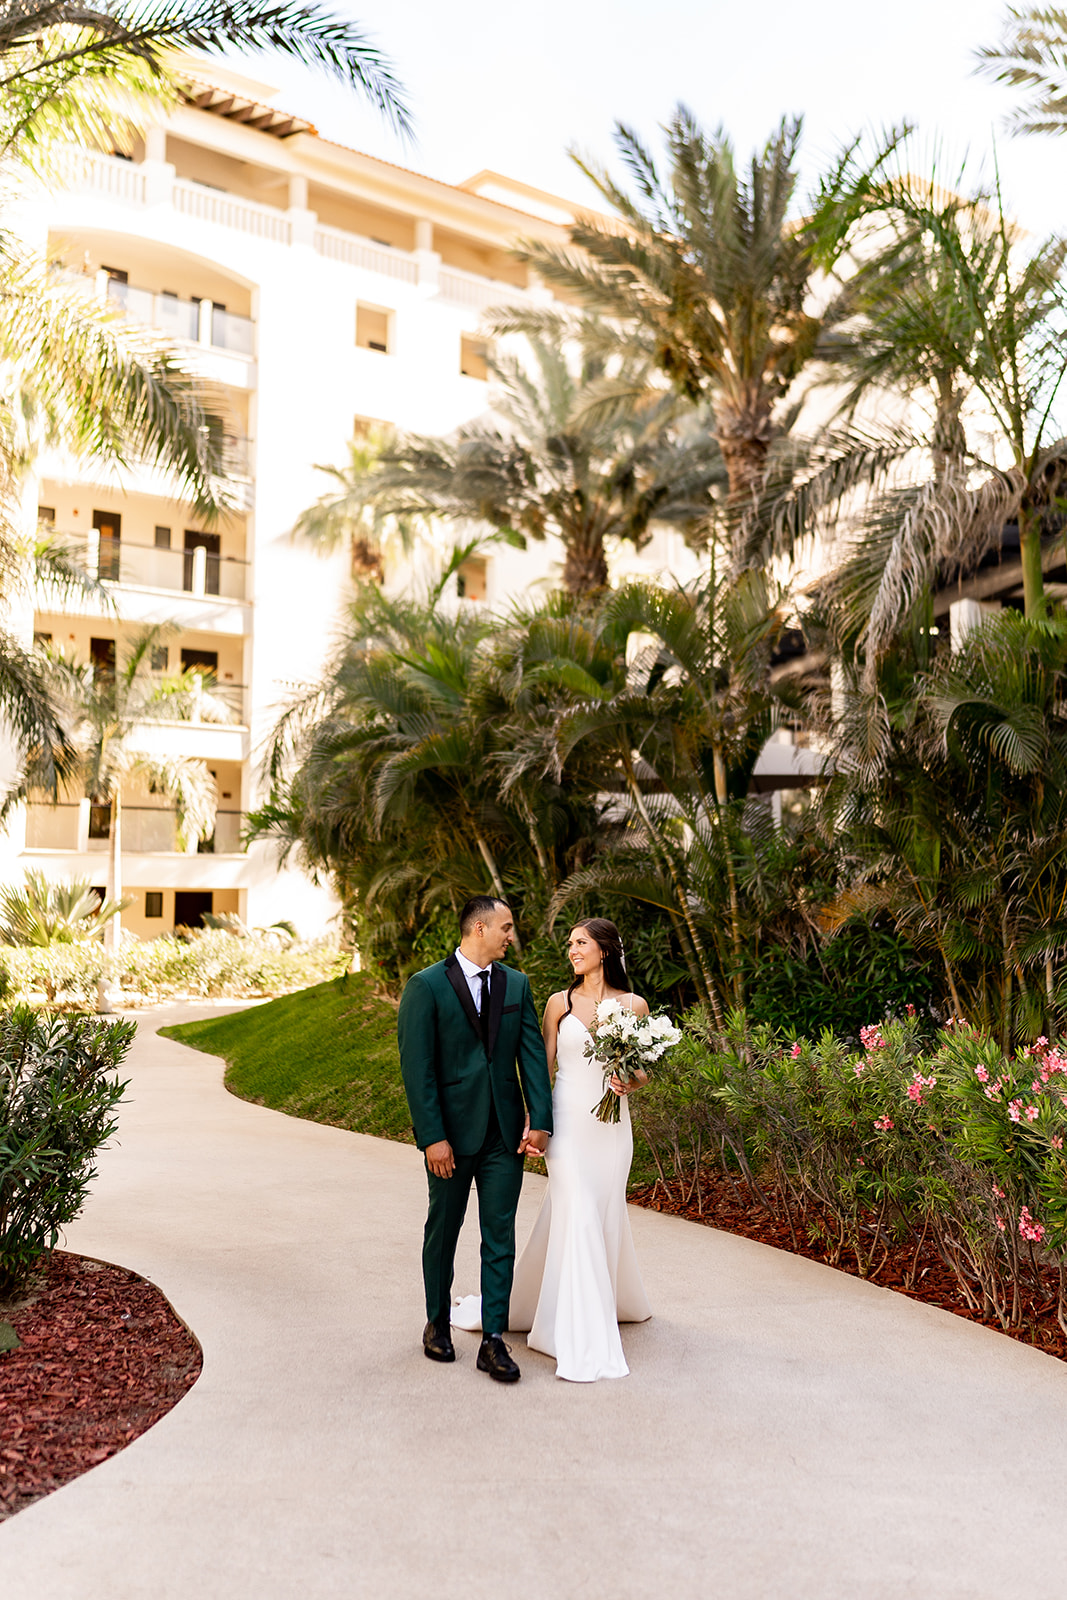 hyatt ziva los cabos bride and groom walking at resort under palm trees